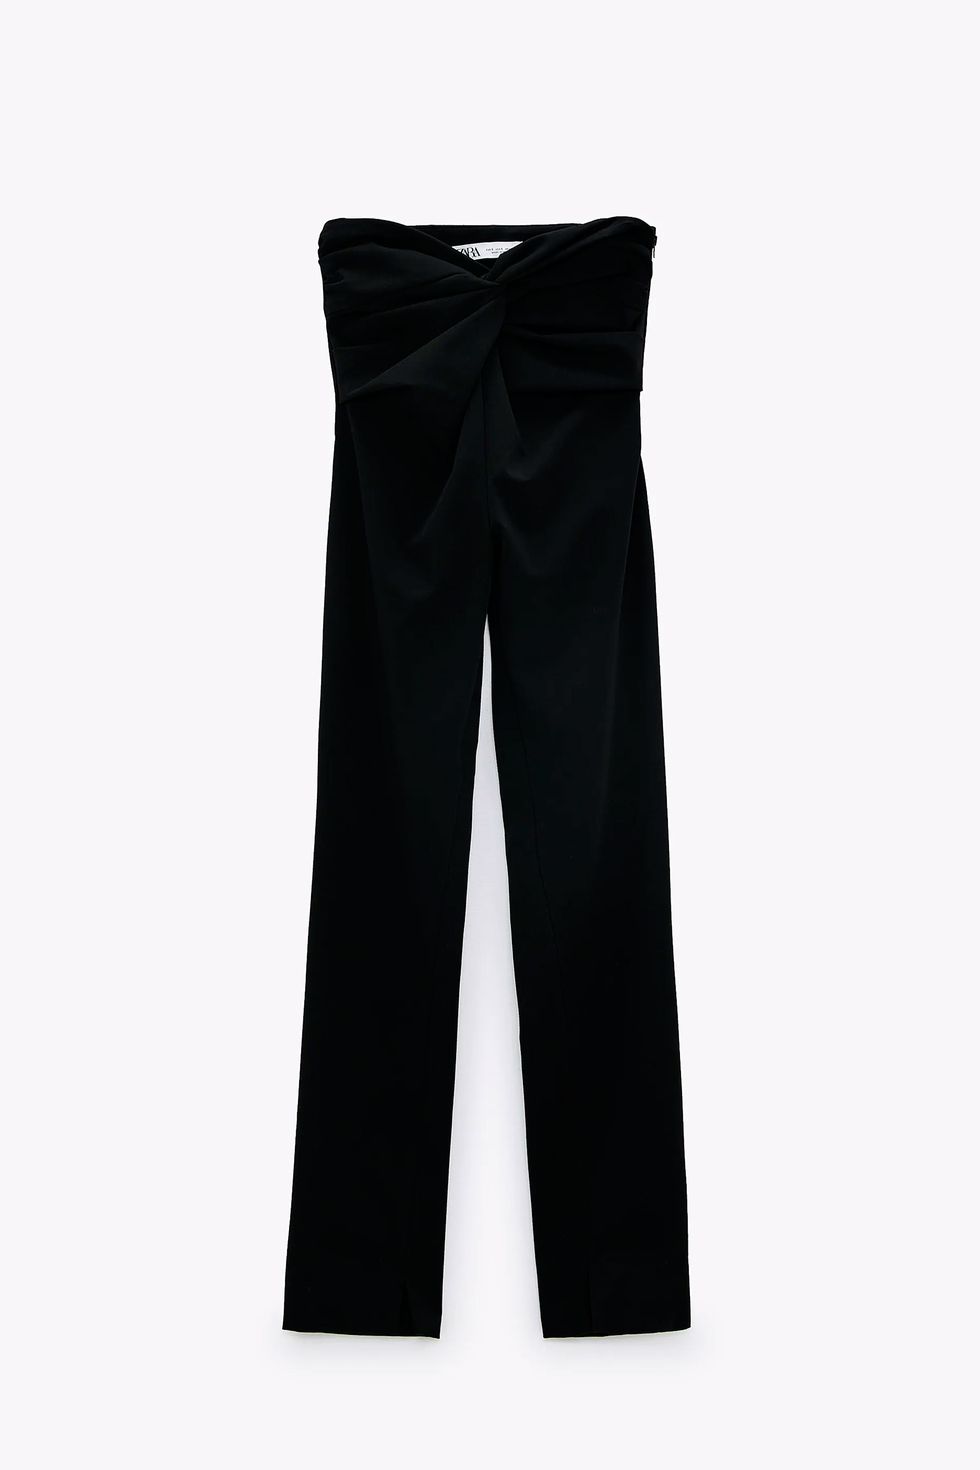 Pantalon Vestir Mujer Zara Basic Negro. La Segunda Bazar